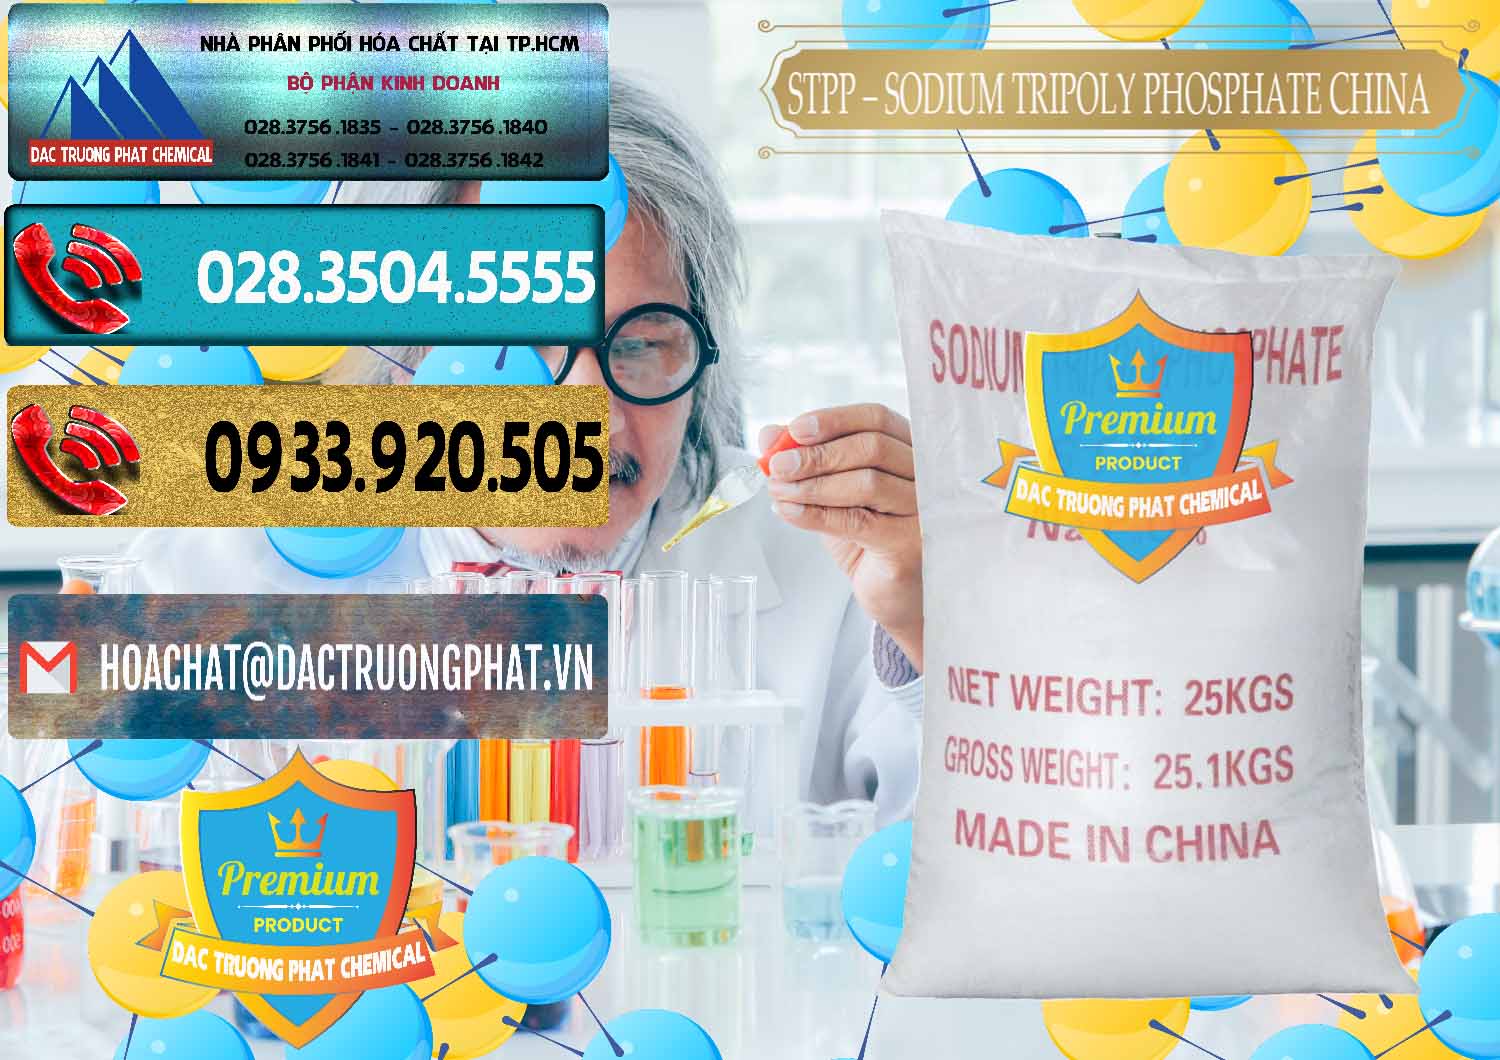 Cty nhập khẩu _ bán Sodium Tripoly Phosphate - STPP 96% Chữ Đỏ Trung Quốc China - 0155 - Cty phân phối _ nhập khẩu hóa chất tại TP.HCM - hoachatdetnhuom.com